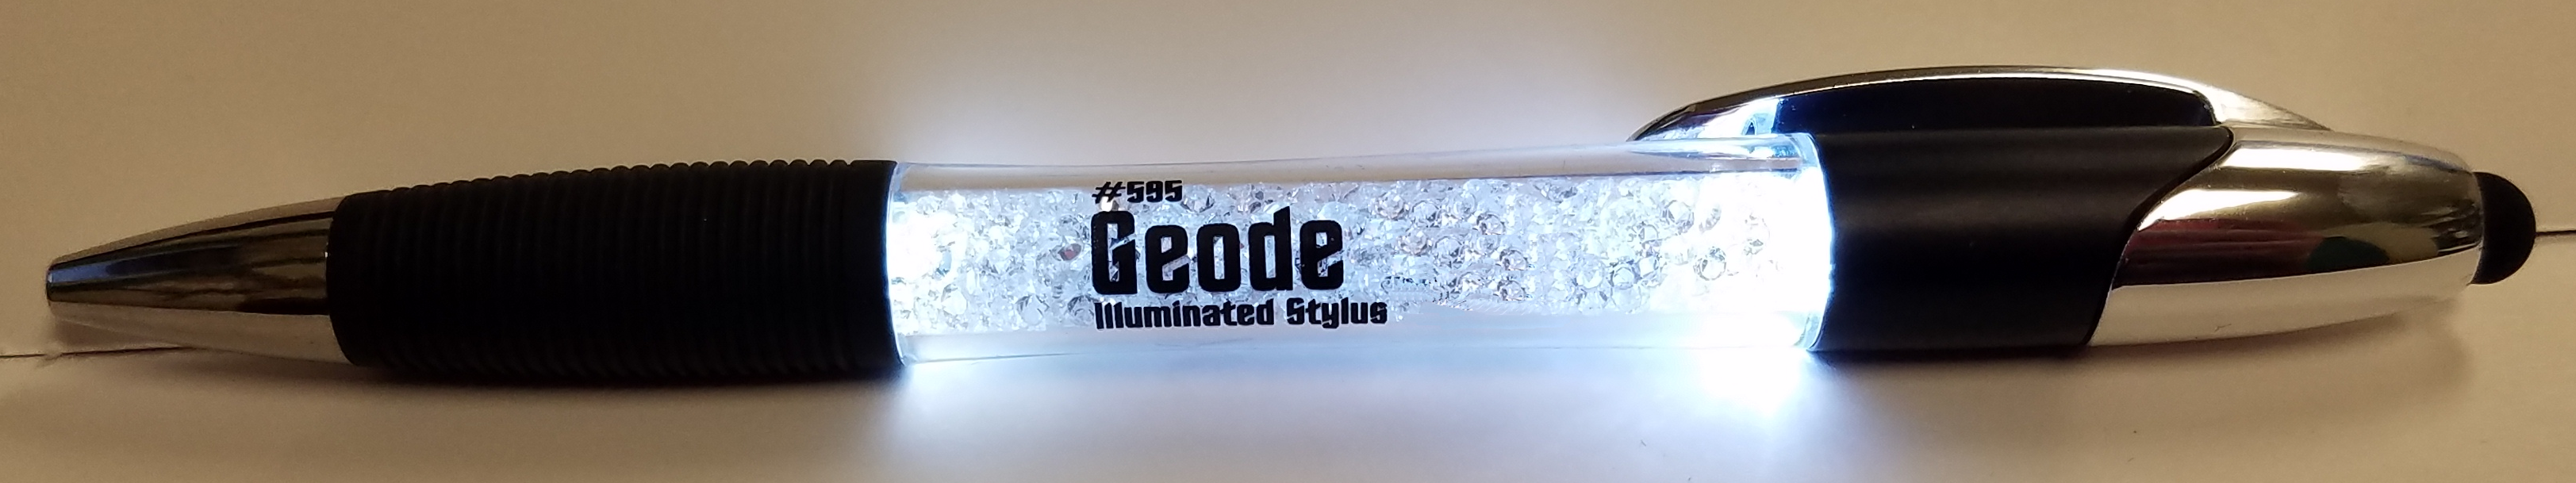 595 Geode Illuminated Stylus